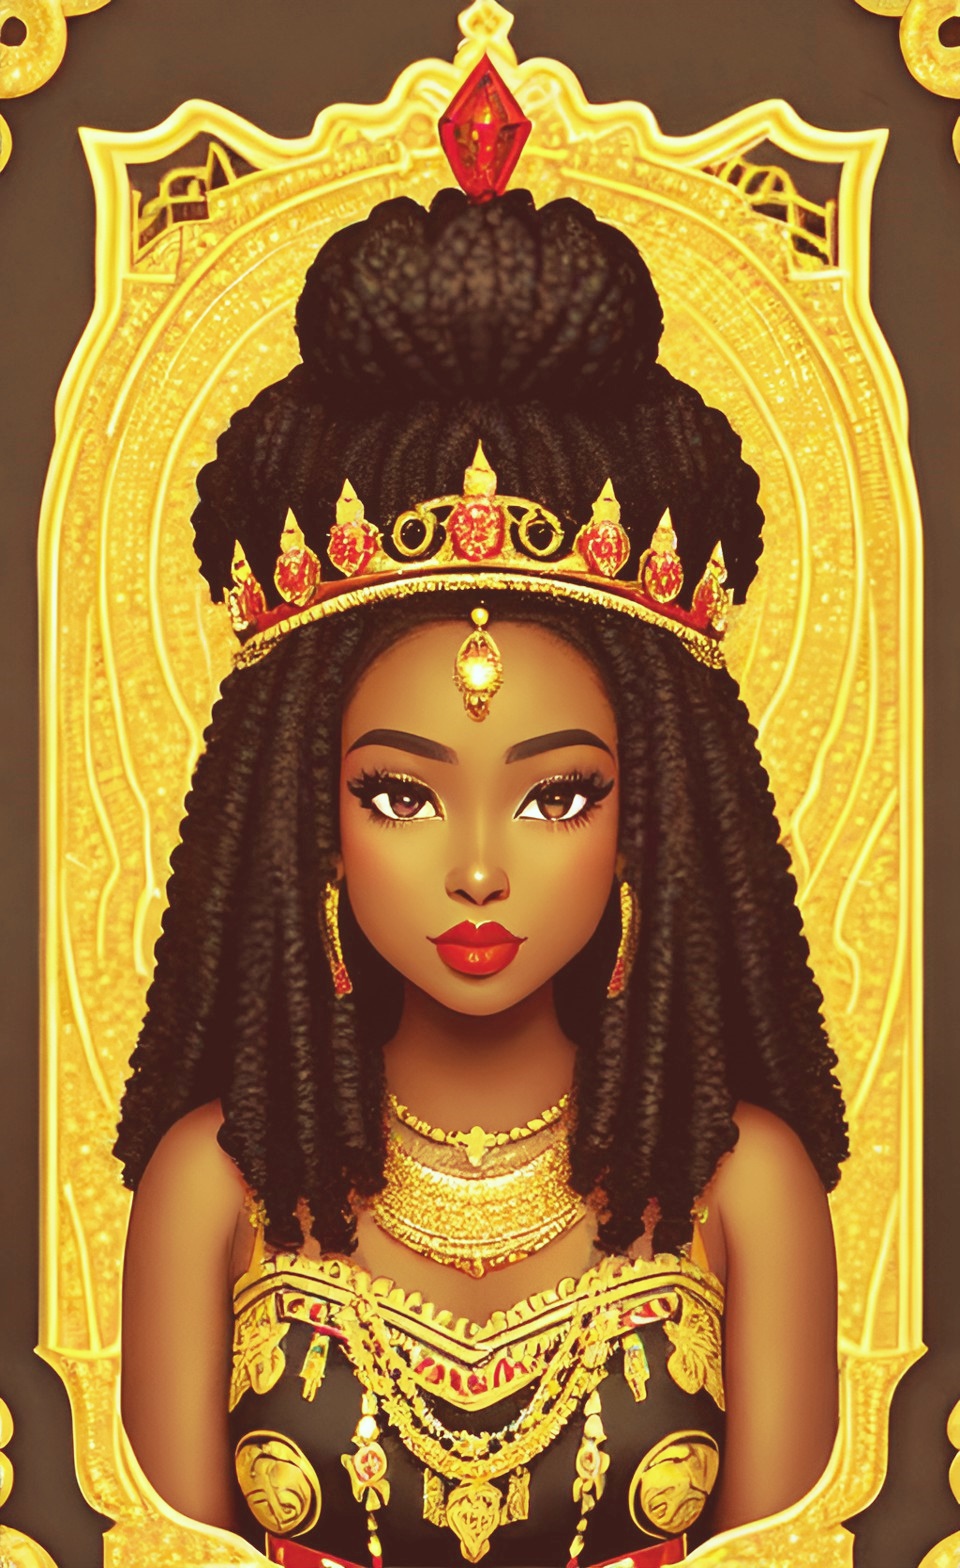 Mixed-race Queen of SHEBA art work Mixed433